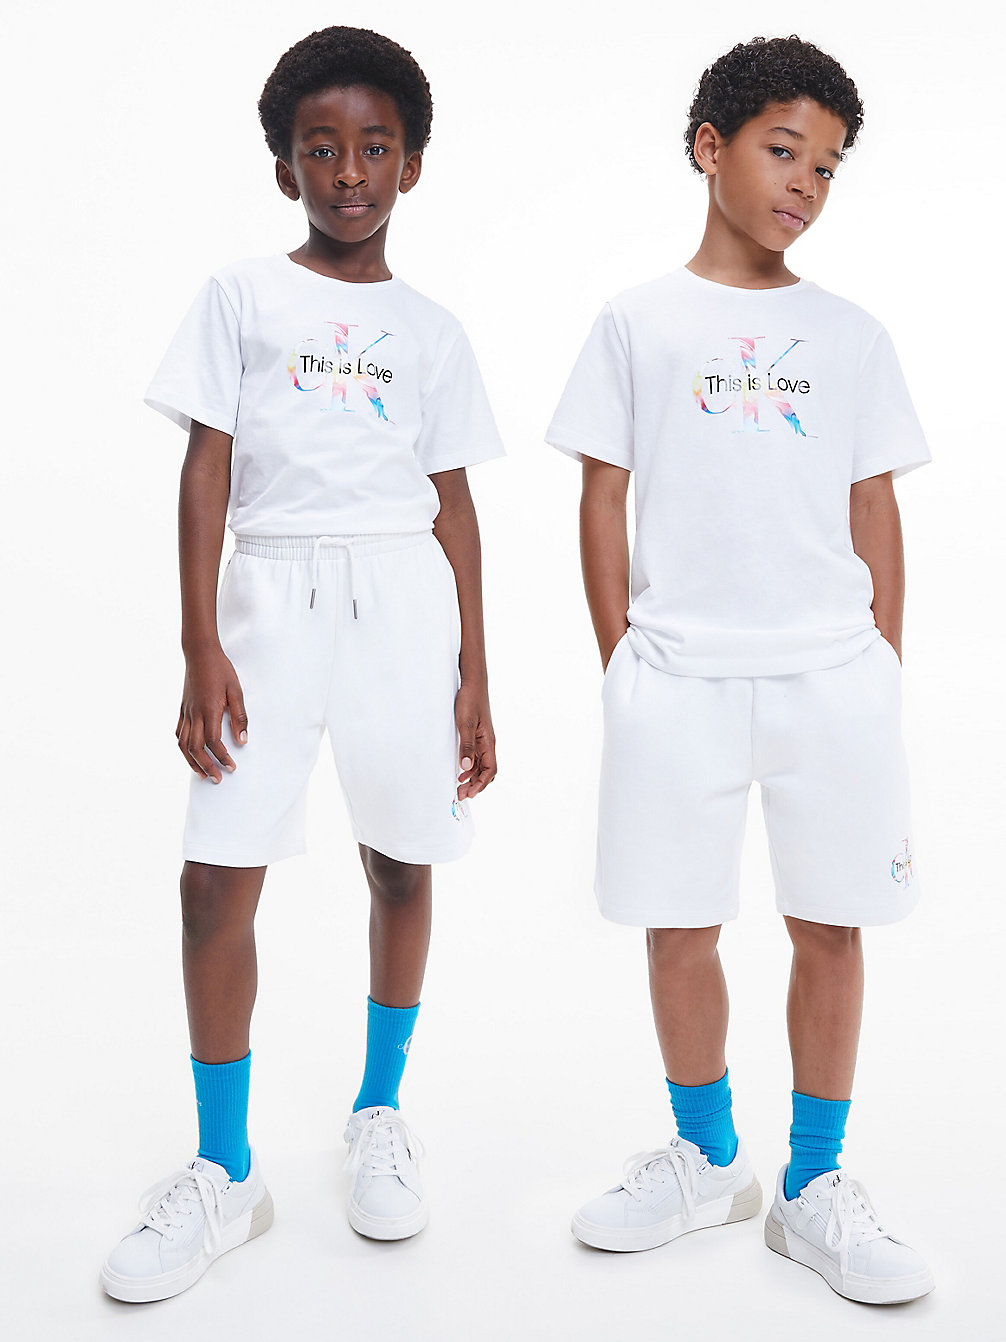 BRIGHT WHITE Unisex Monogram T-Shirt - Pride undefined kids unisex Calvin Klein